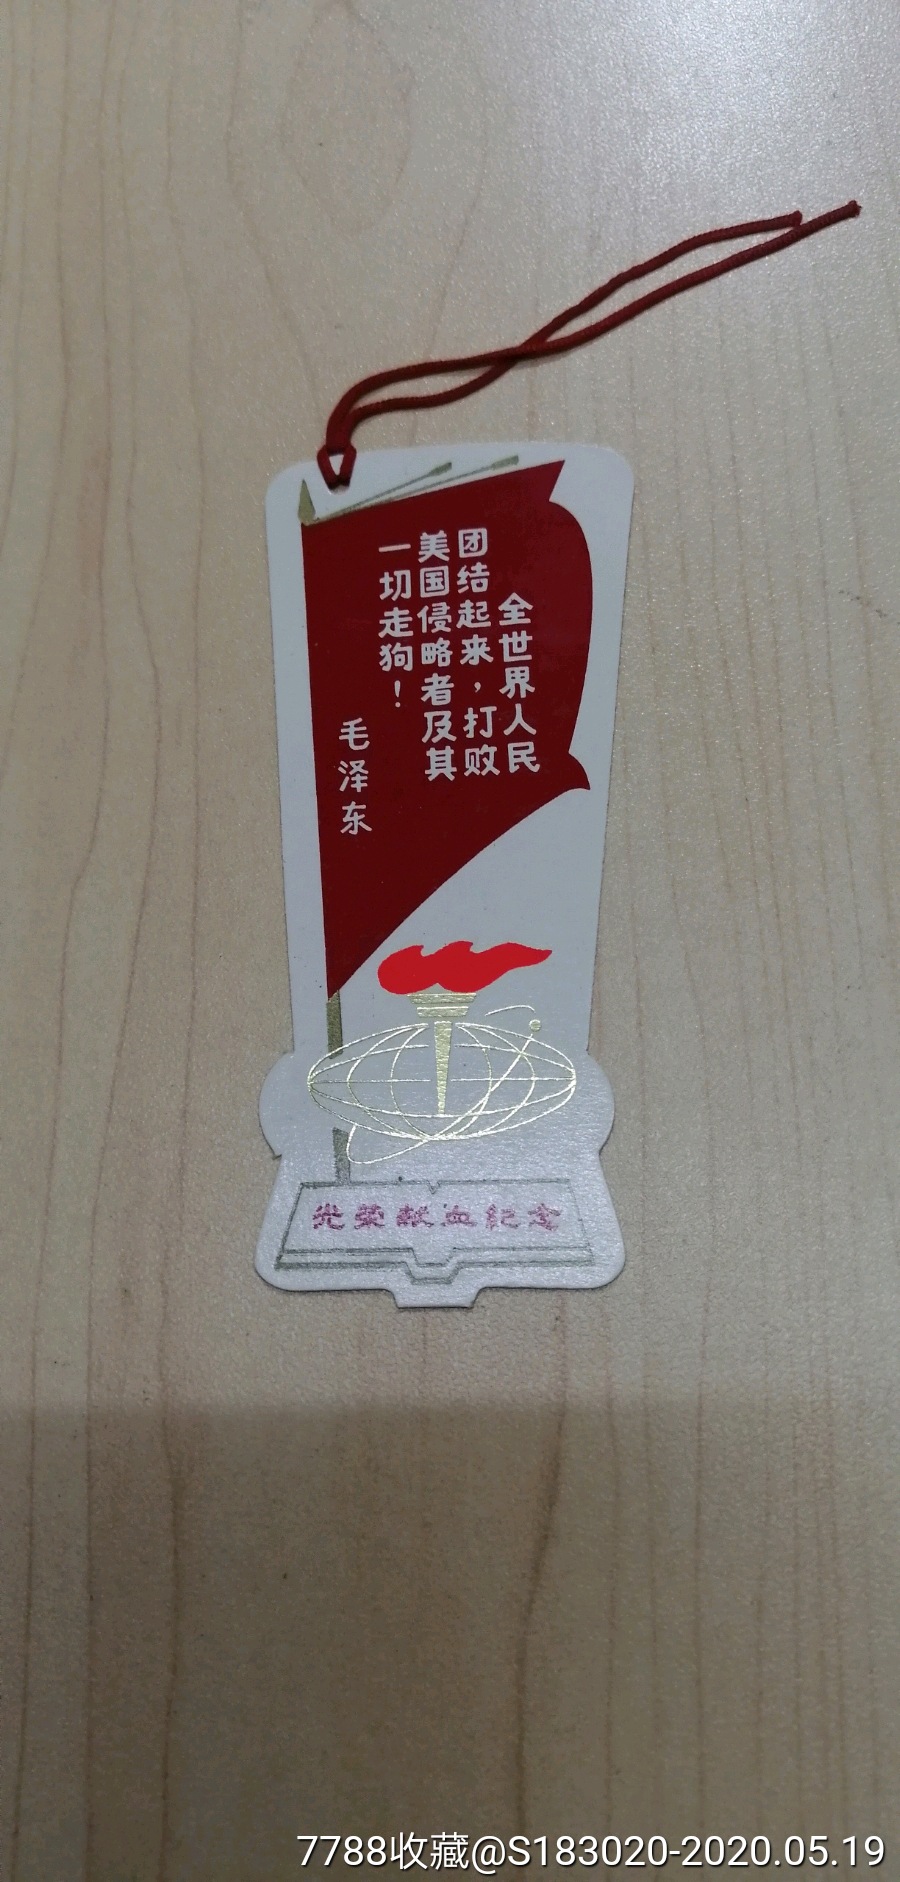 致敬)献血袋 书签(1套)上海生物制品研究所革命委员